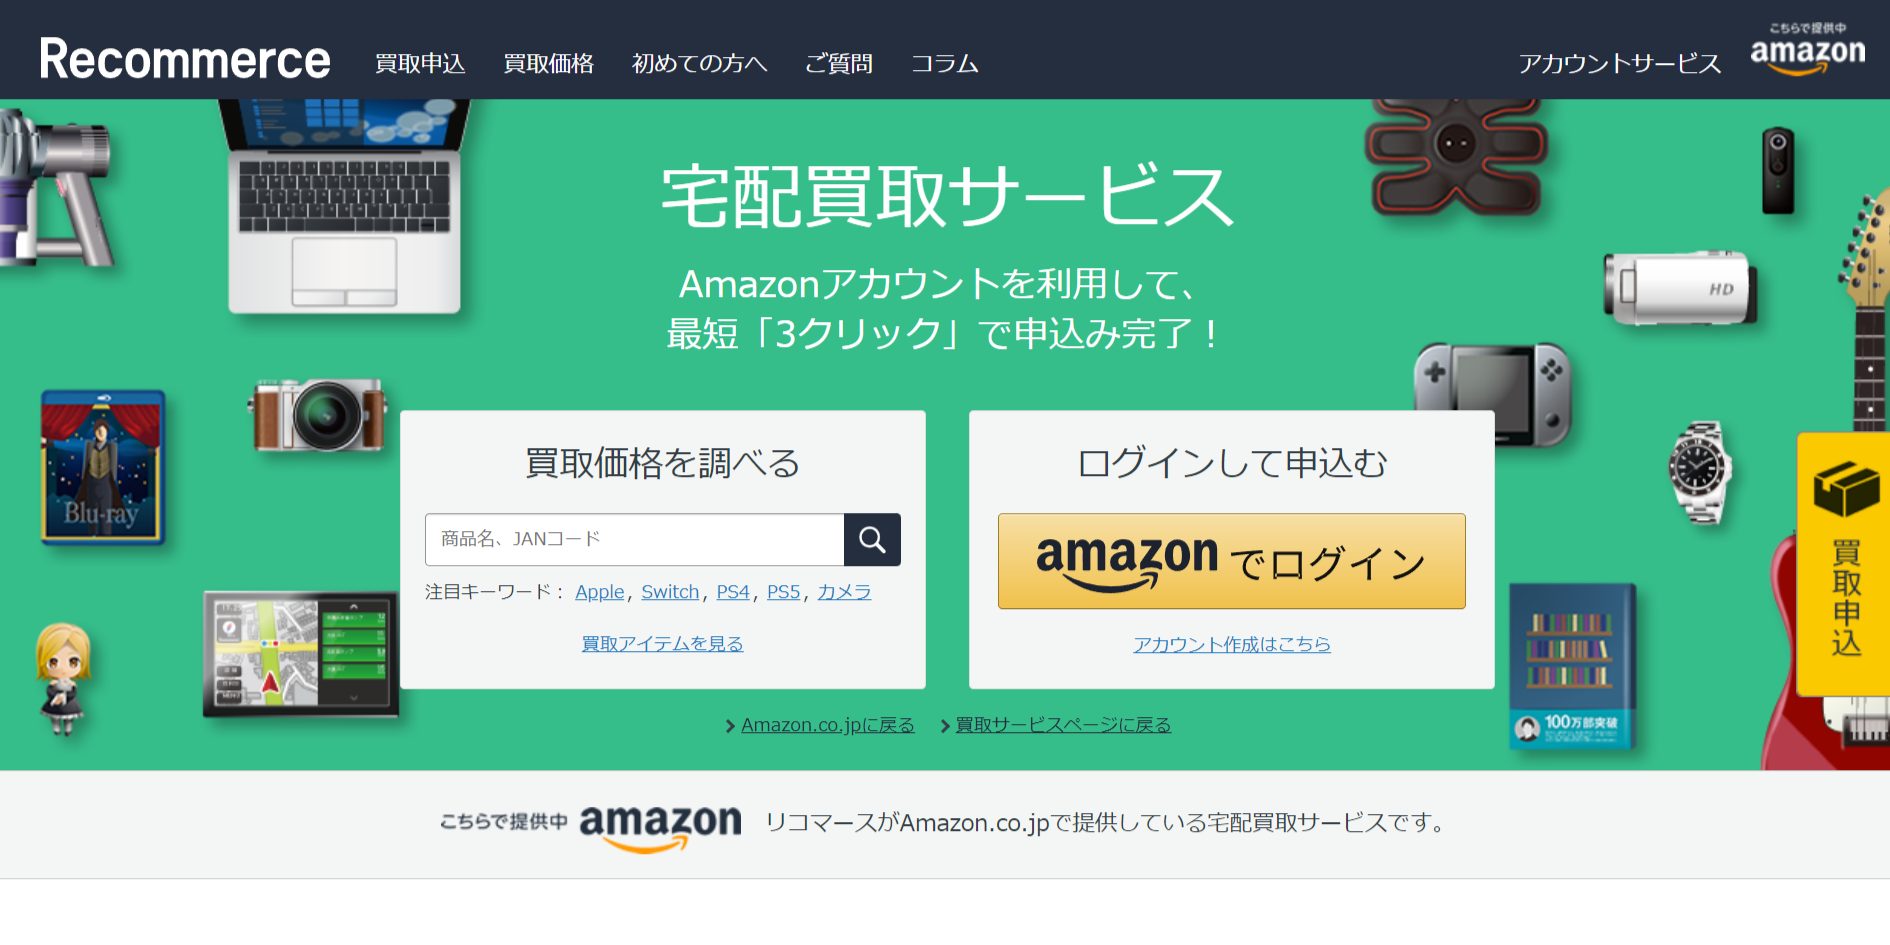 Amazon 買取サービス公式サイトのトップページ